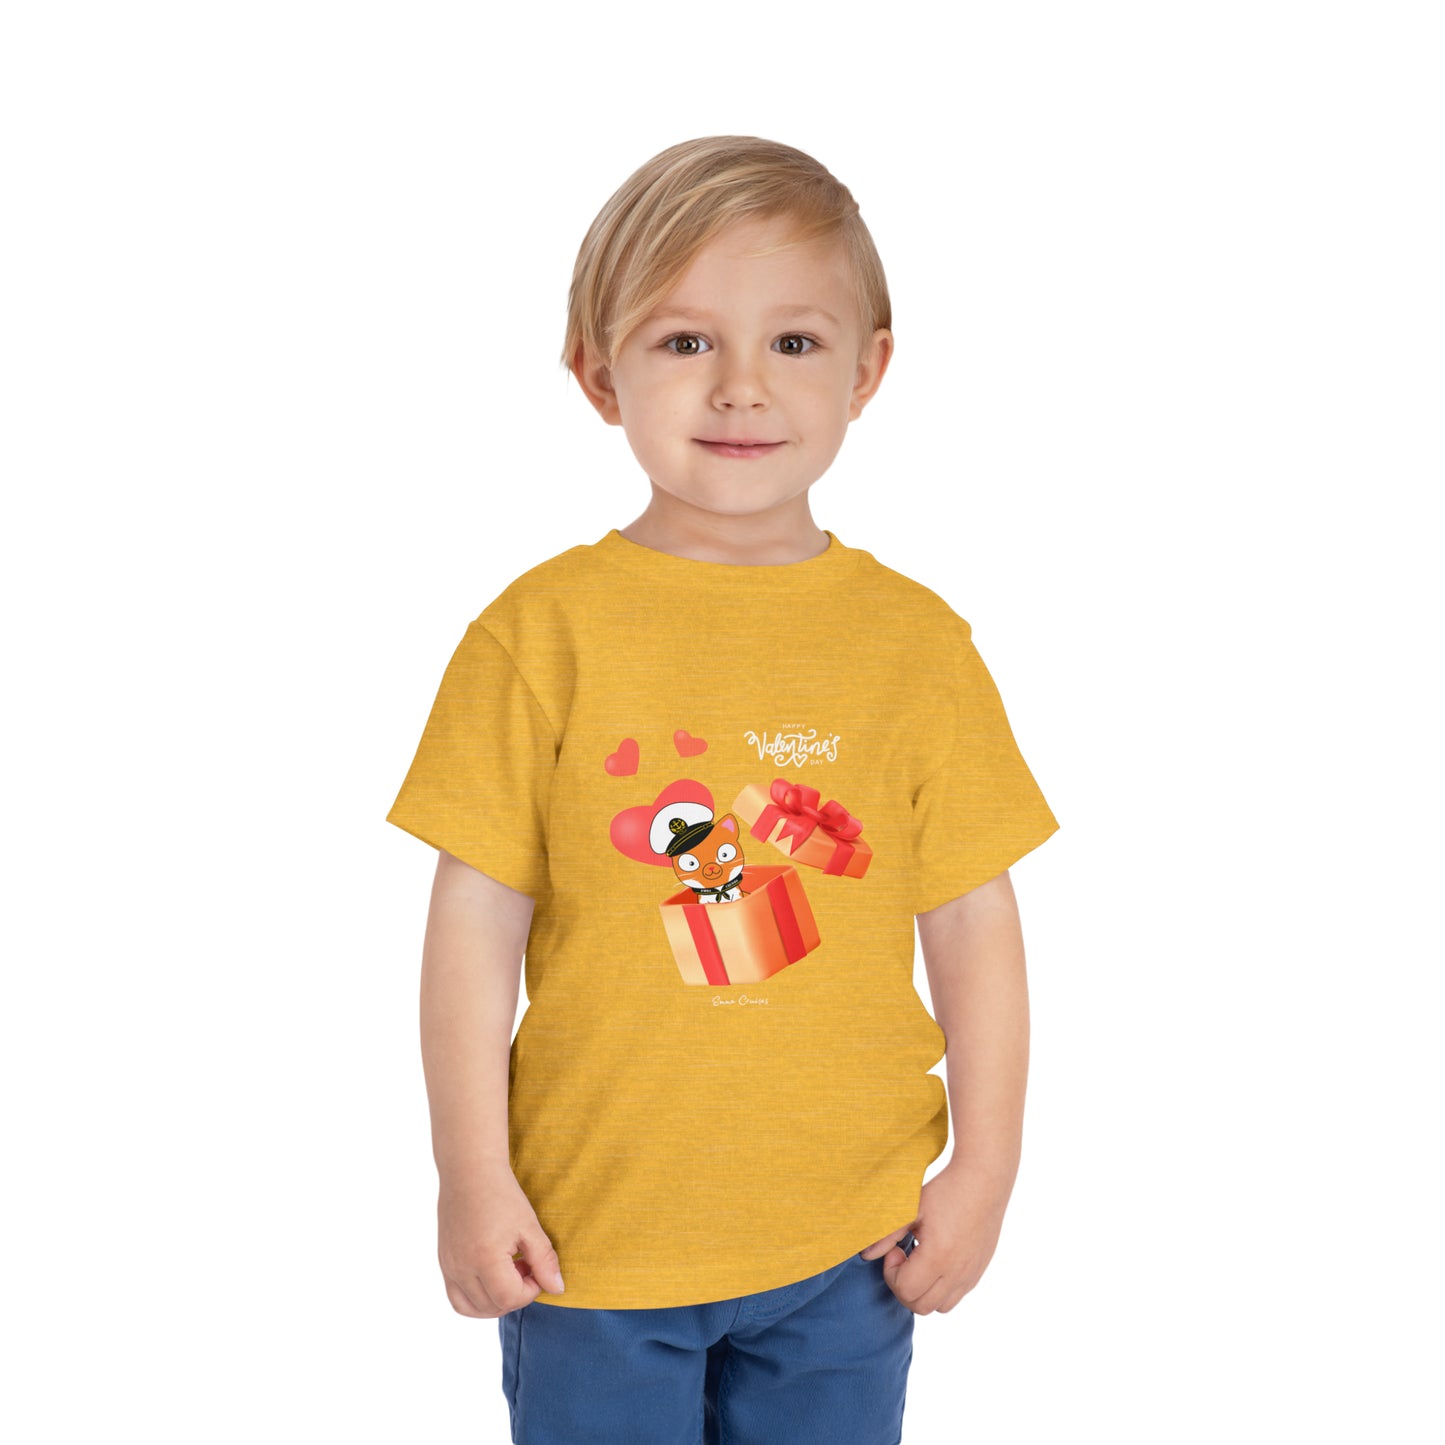 Valentine's Captain Hudson - Toddler UNISEX T-Shirt